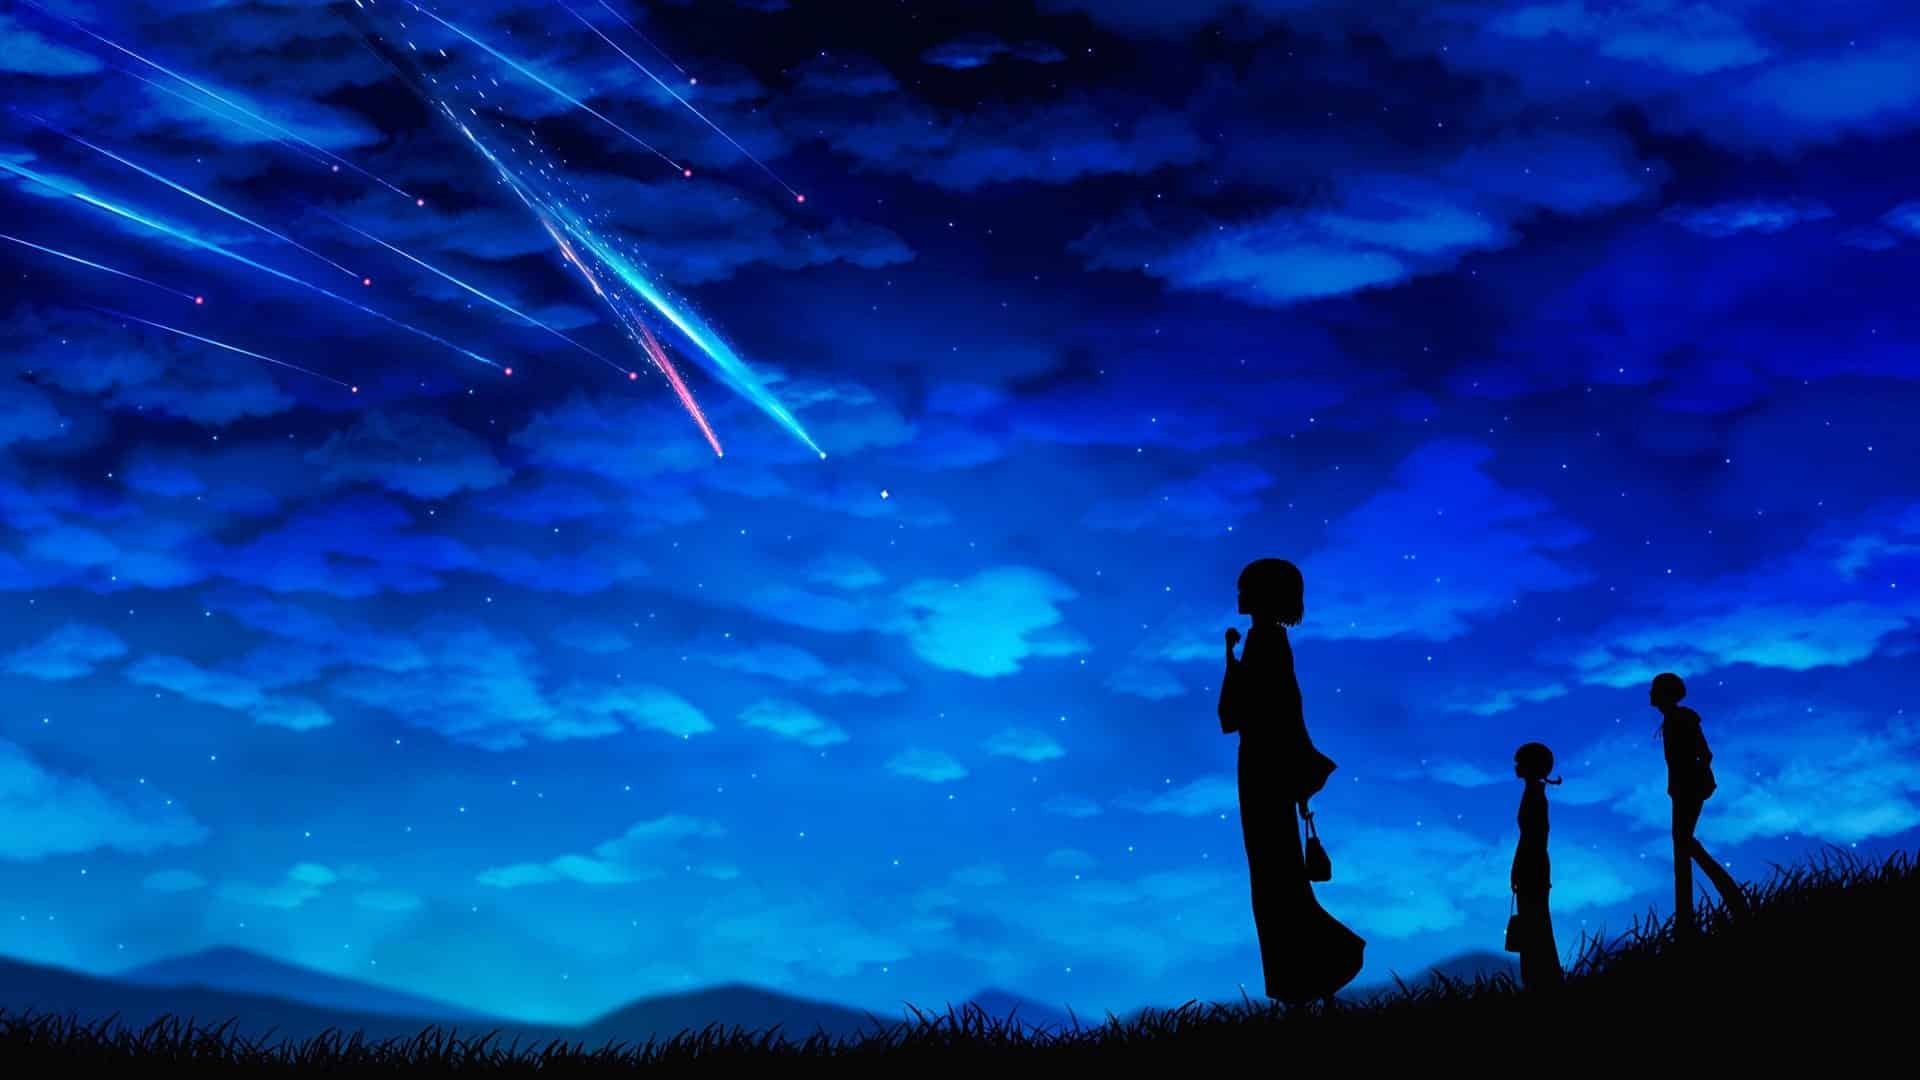 Hình ảnh Anime phong cảnh hiếm đẹp như mơ